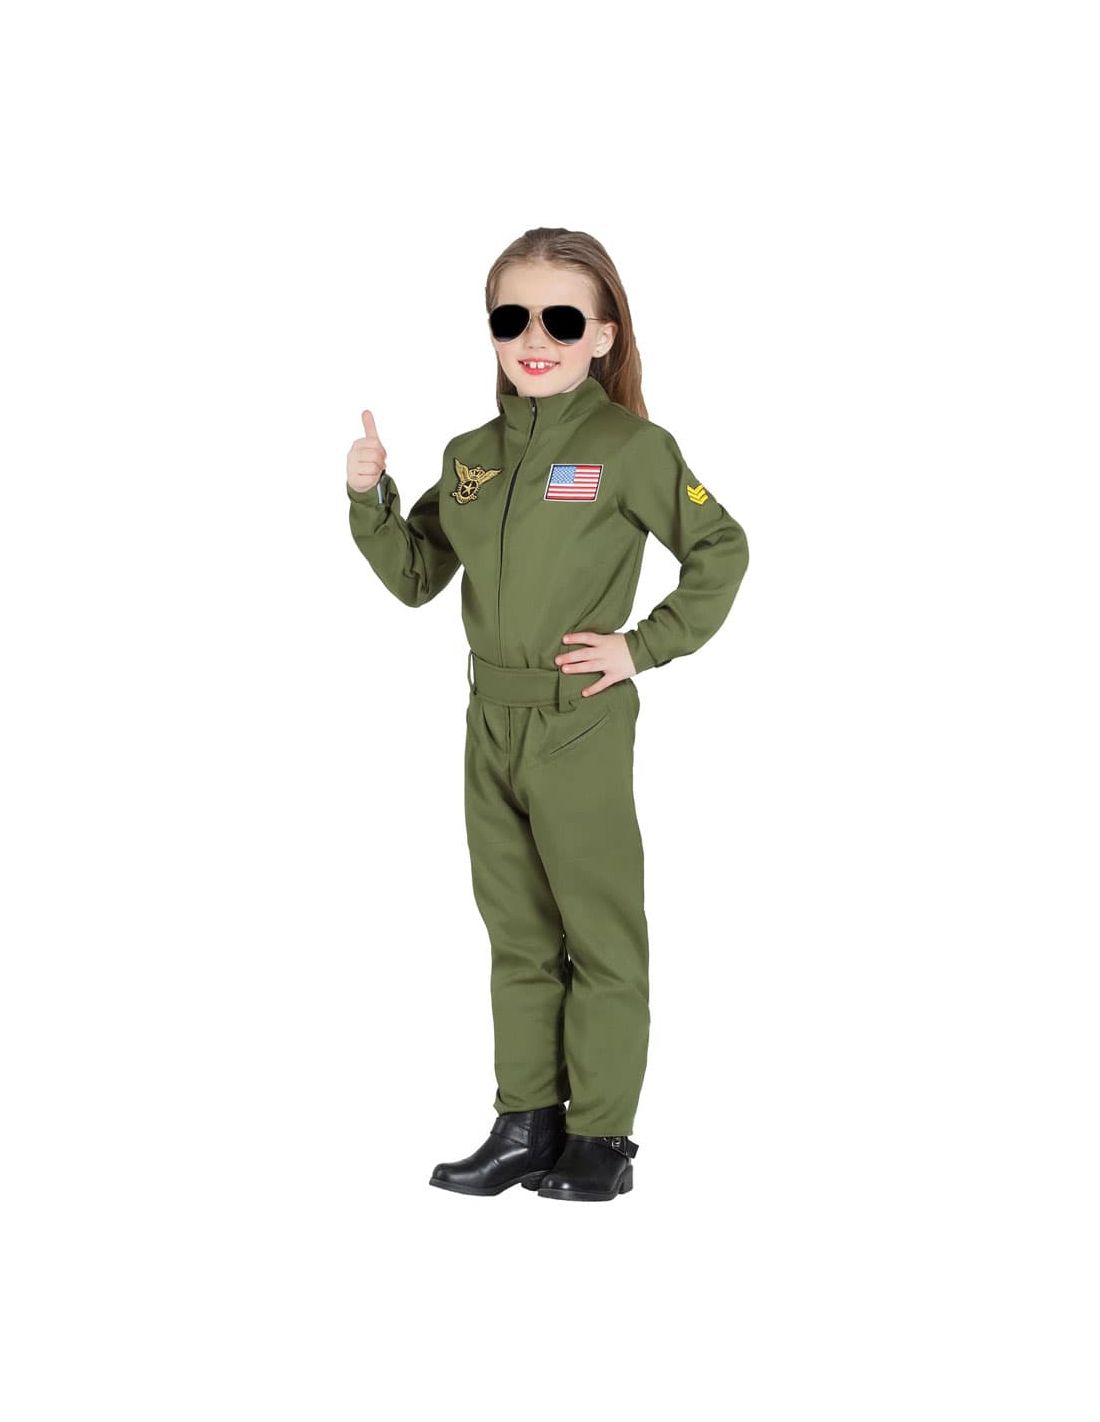 Disfraces de pilotos, aviadores y azafatas para niños y adultos